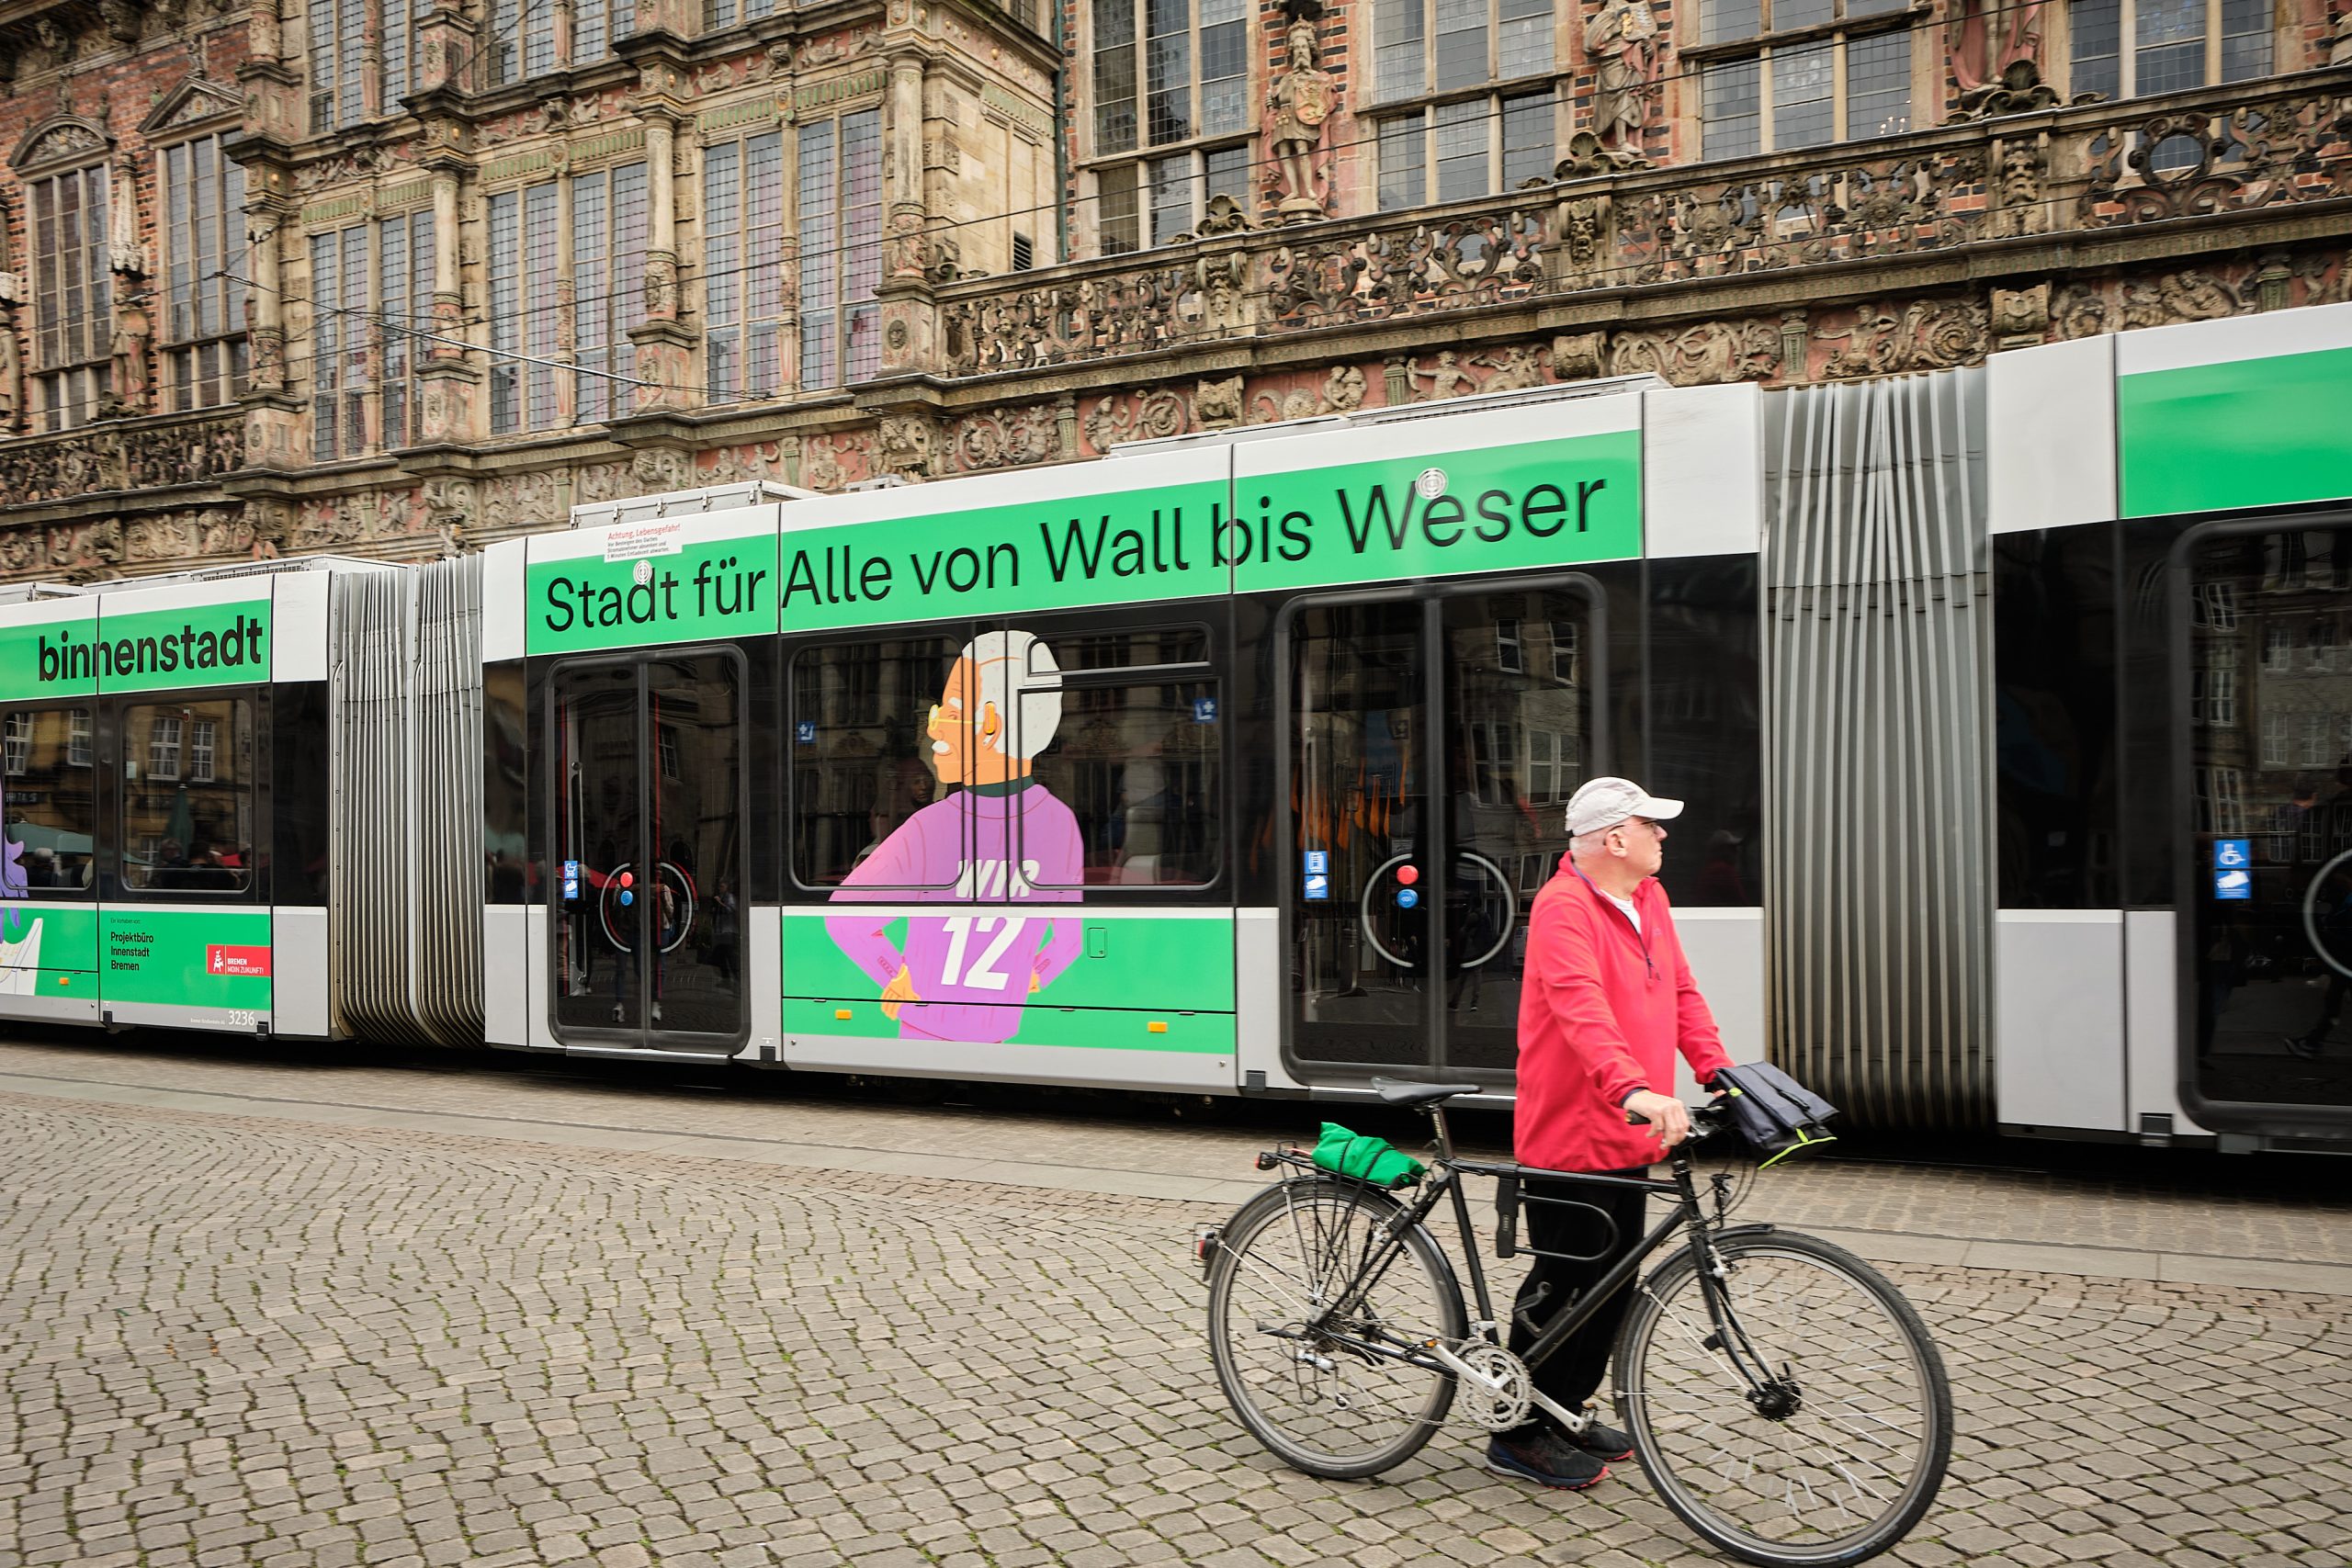 Straßenbahn mit binnenstadt-Branding